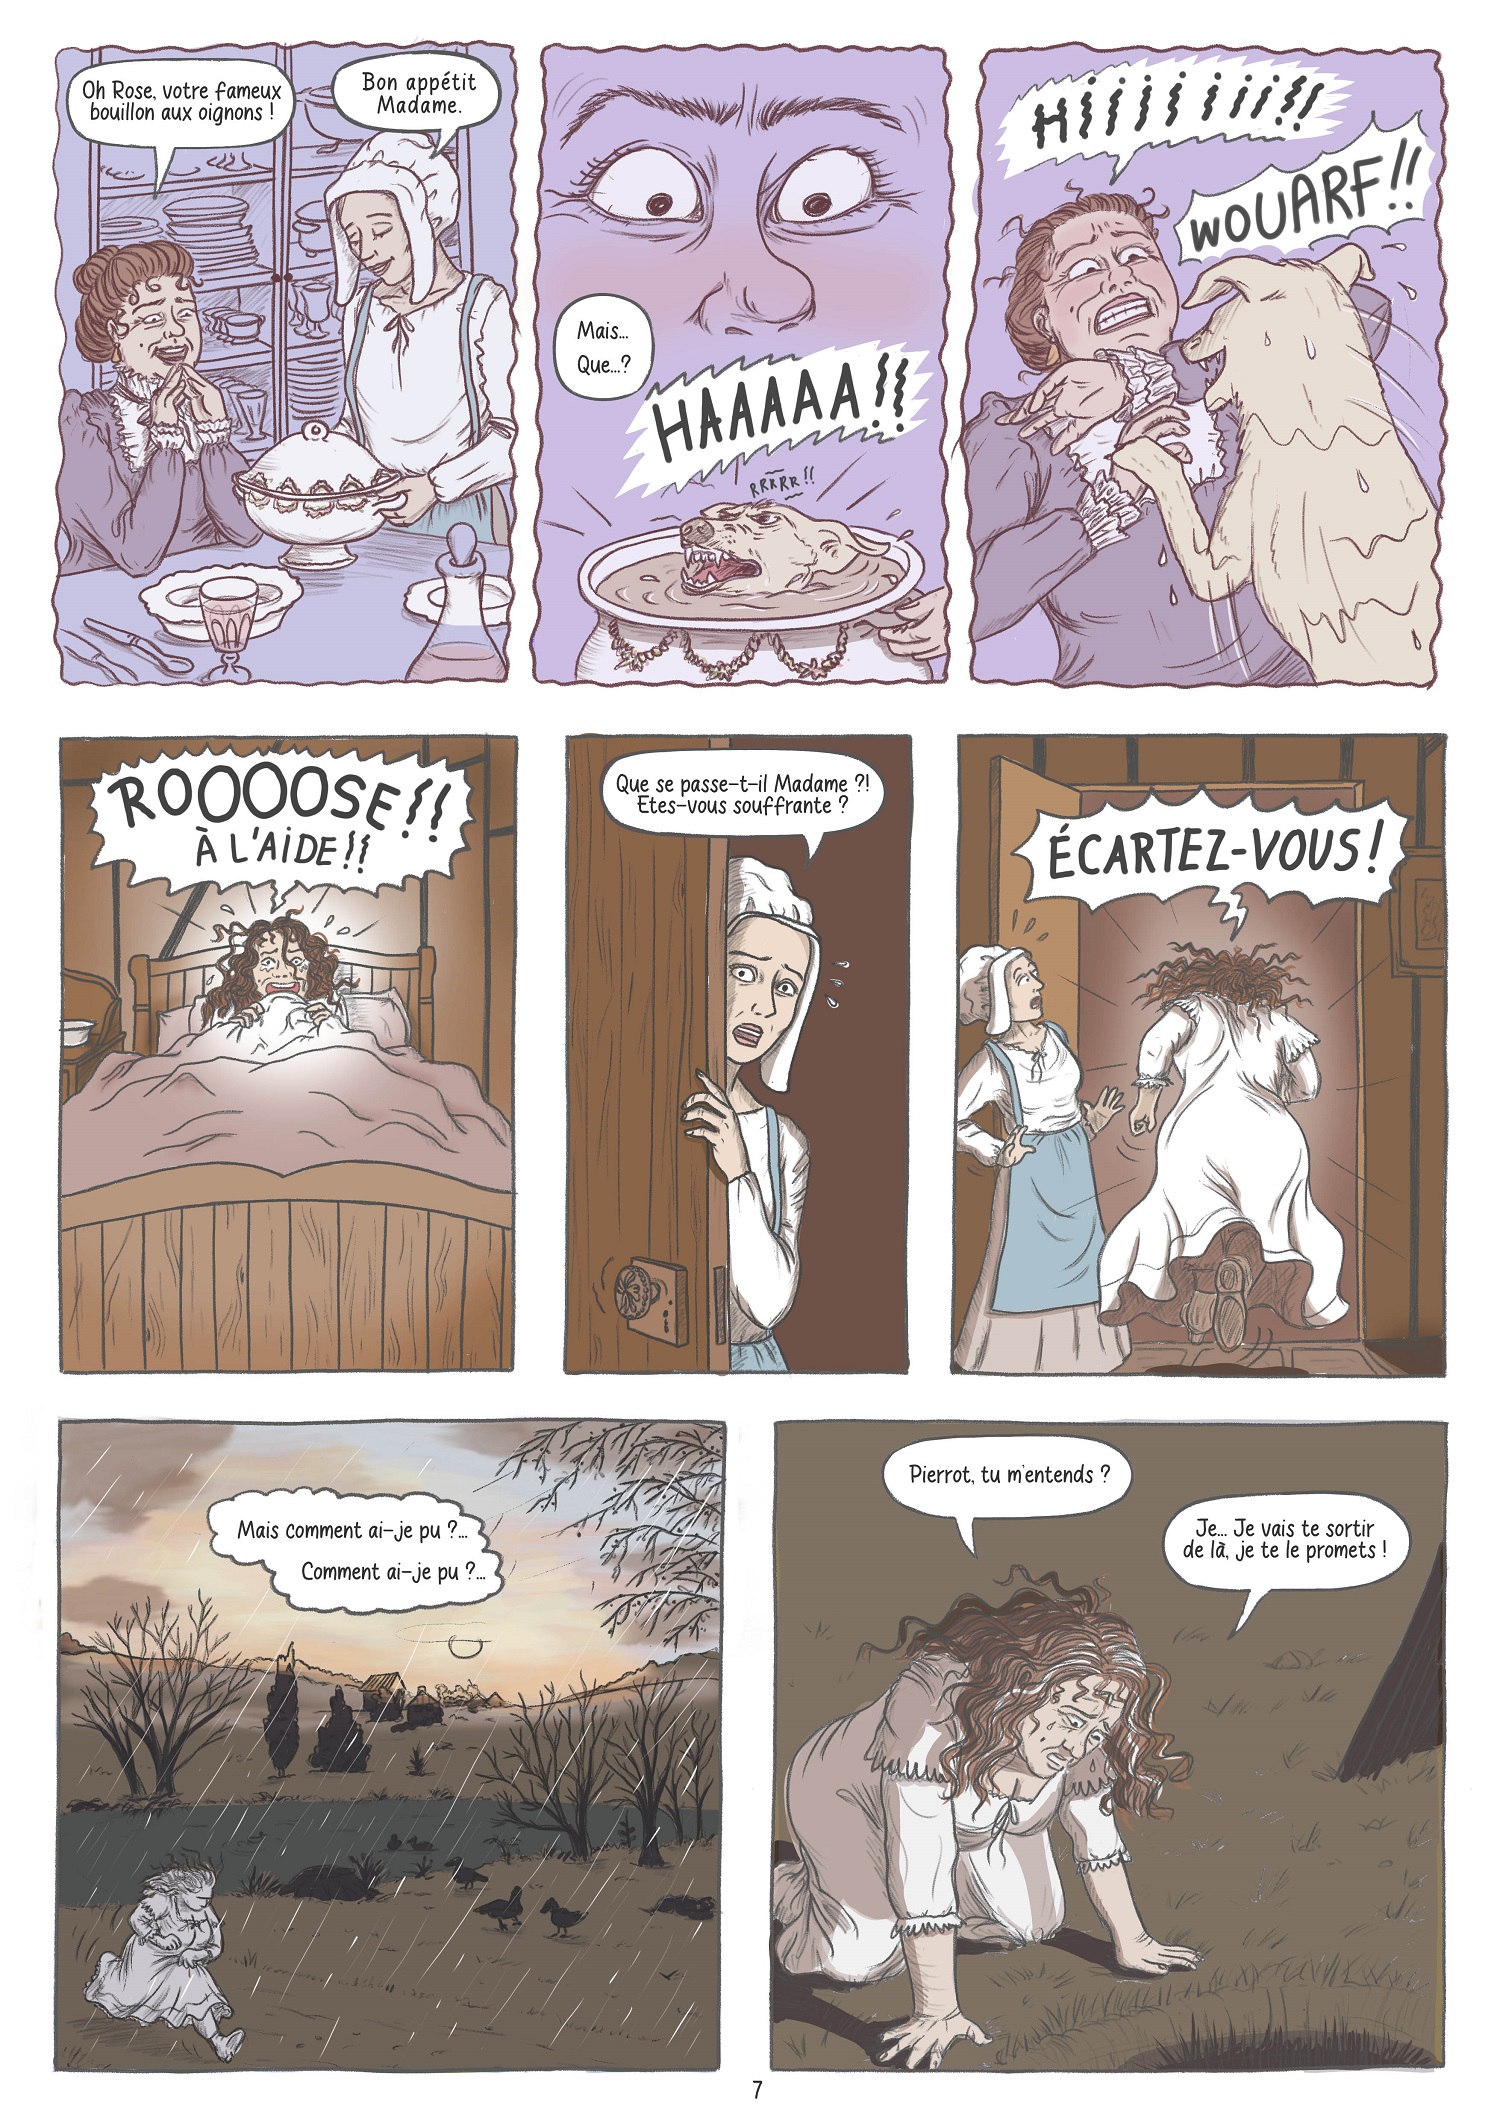 Pierrot Page 7 - Nouvelle de Maupassant